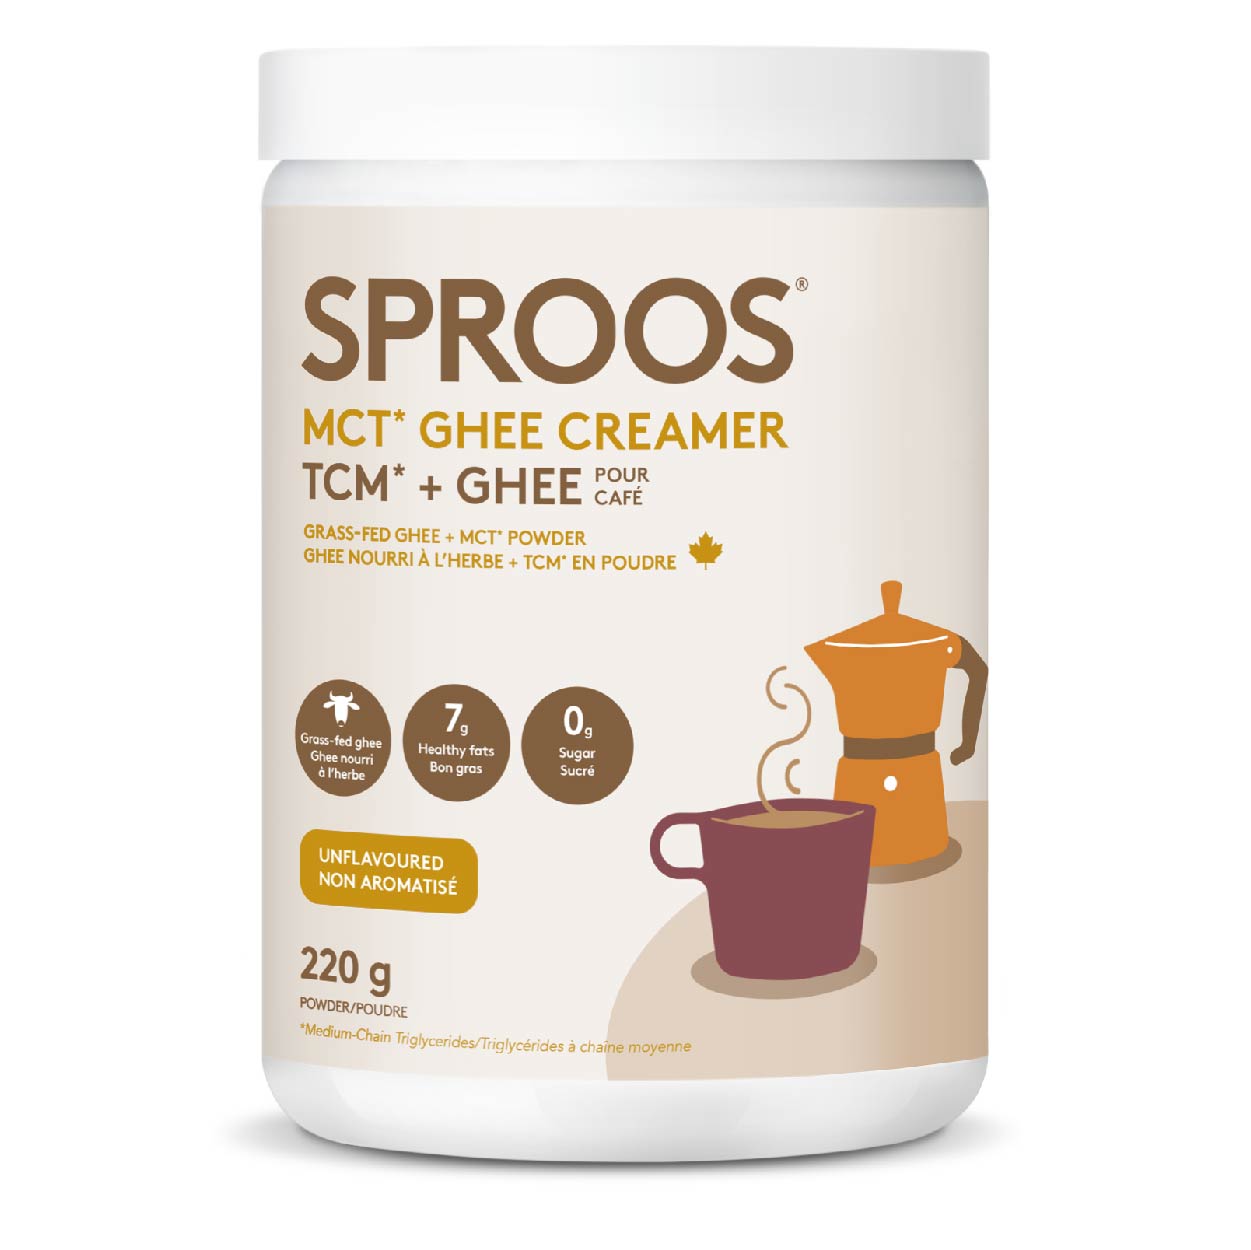 Sproos MCT Ghee Creamer